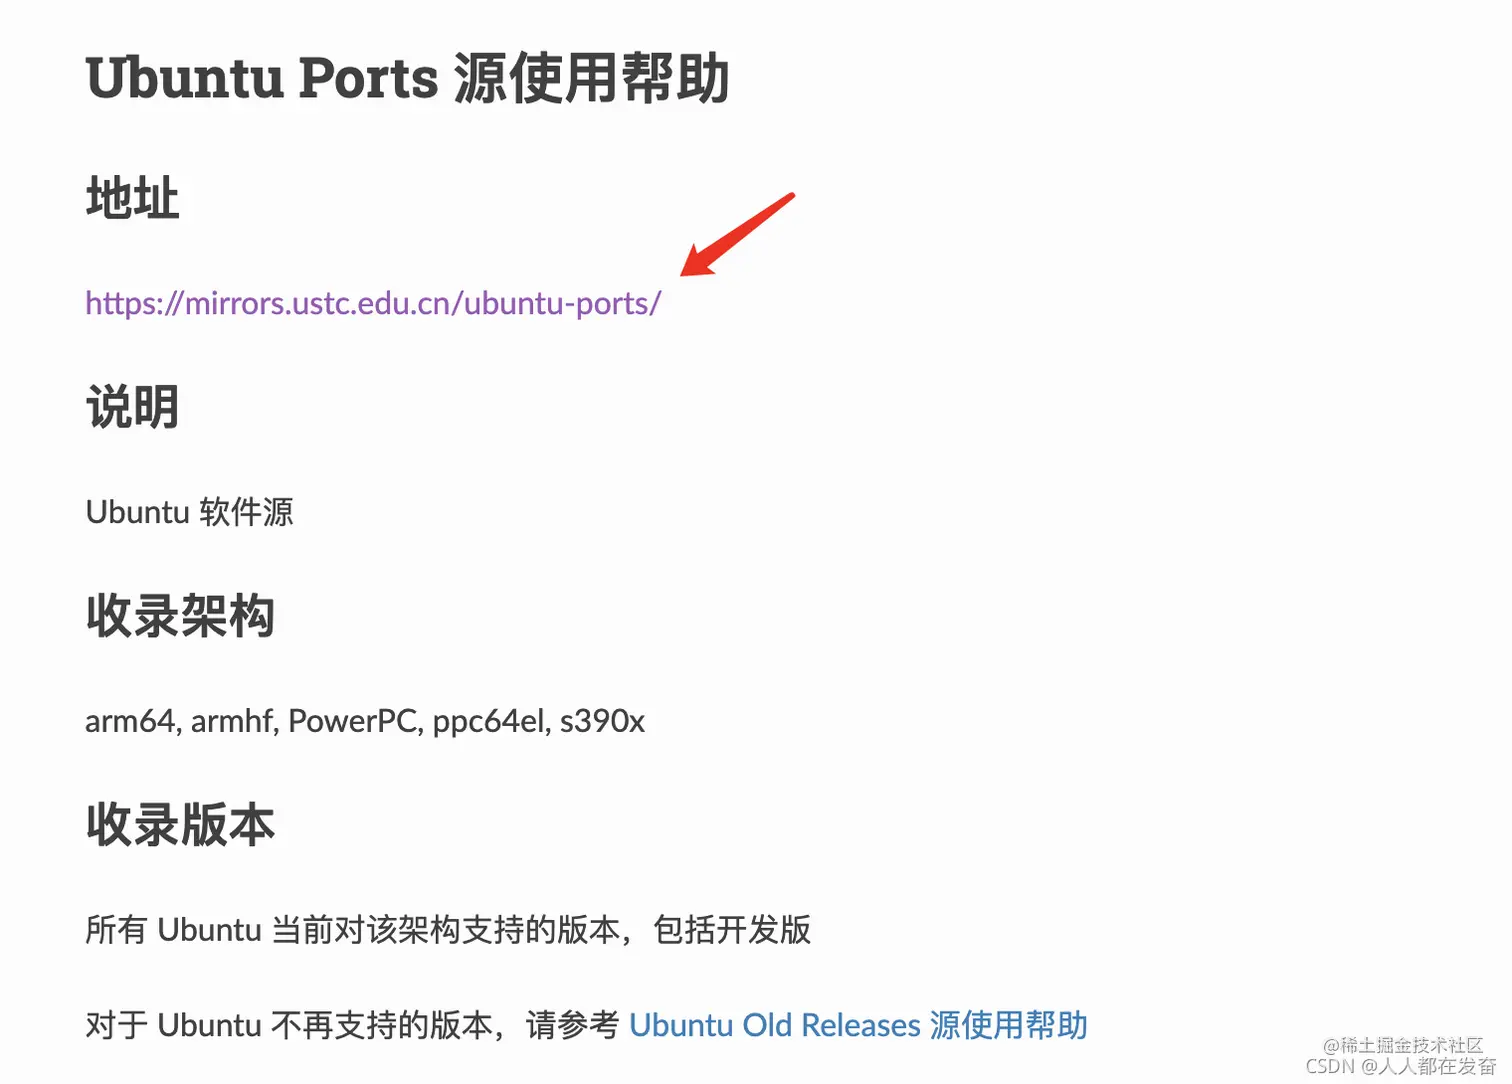 Ubuntu Ports